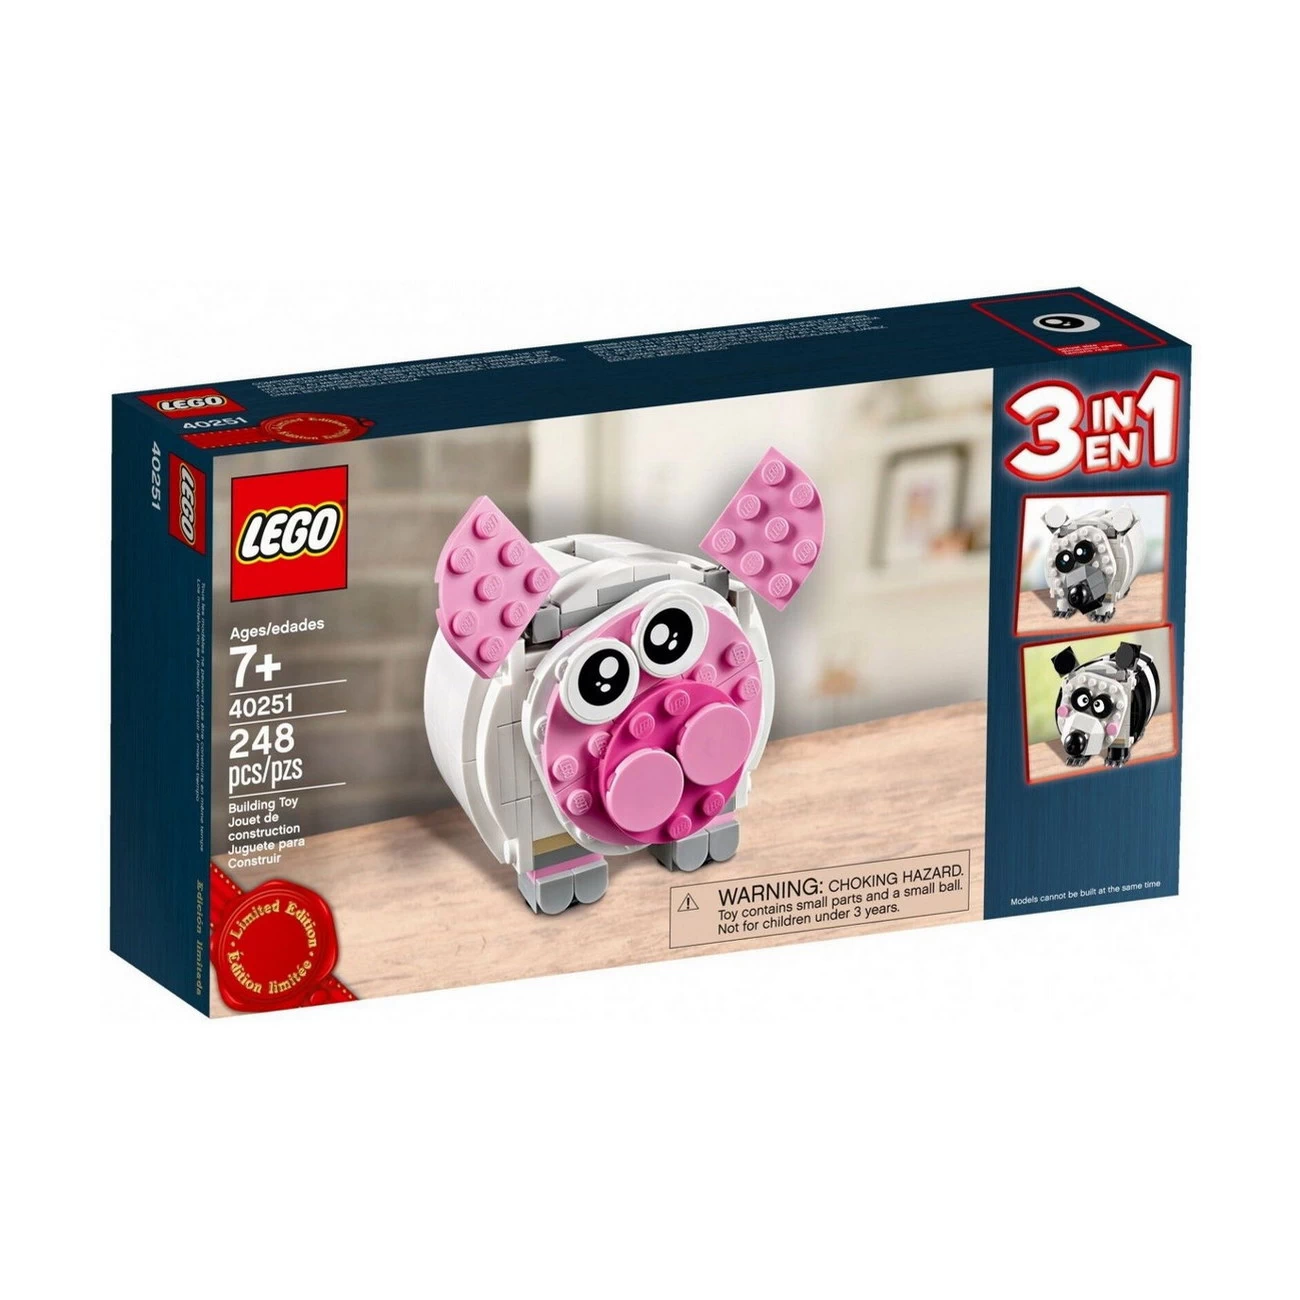 LEGO 40251 - Mini-Sparschwein - Limited Edition 2017